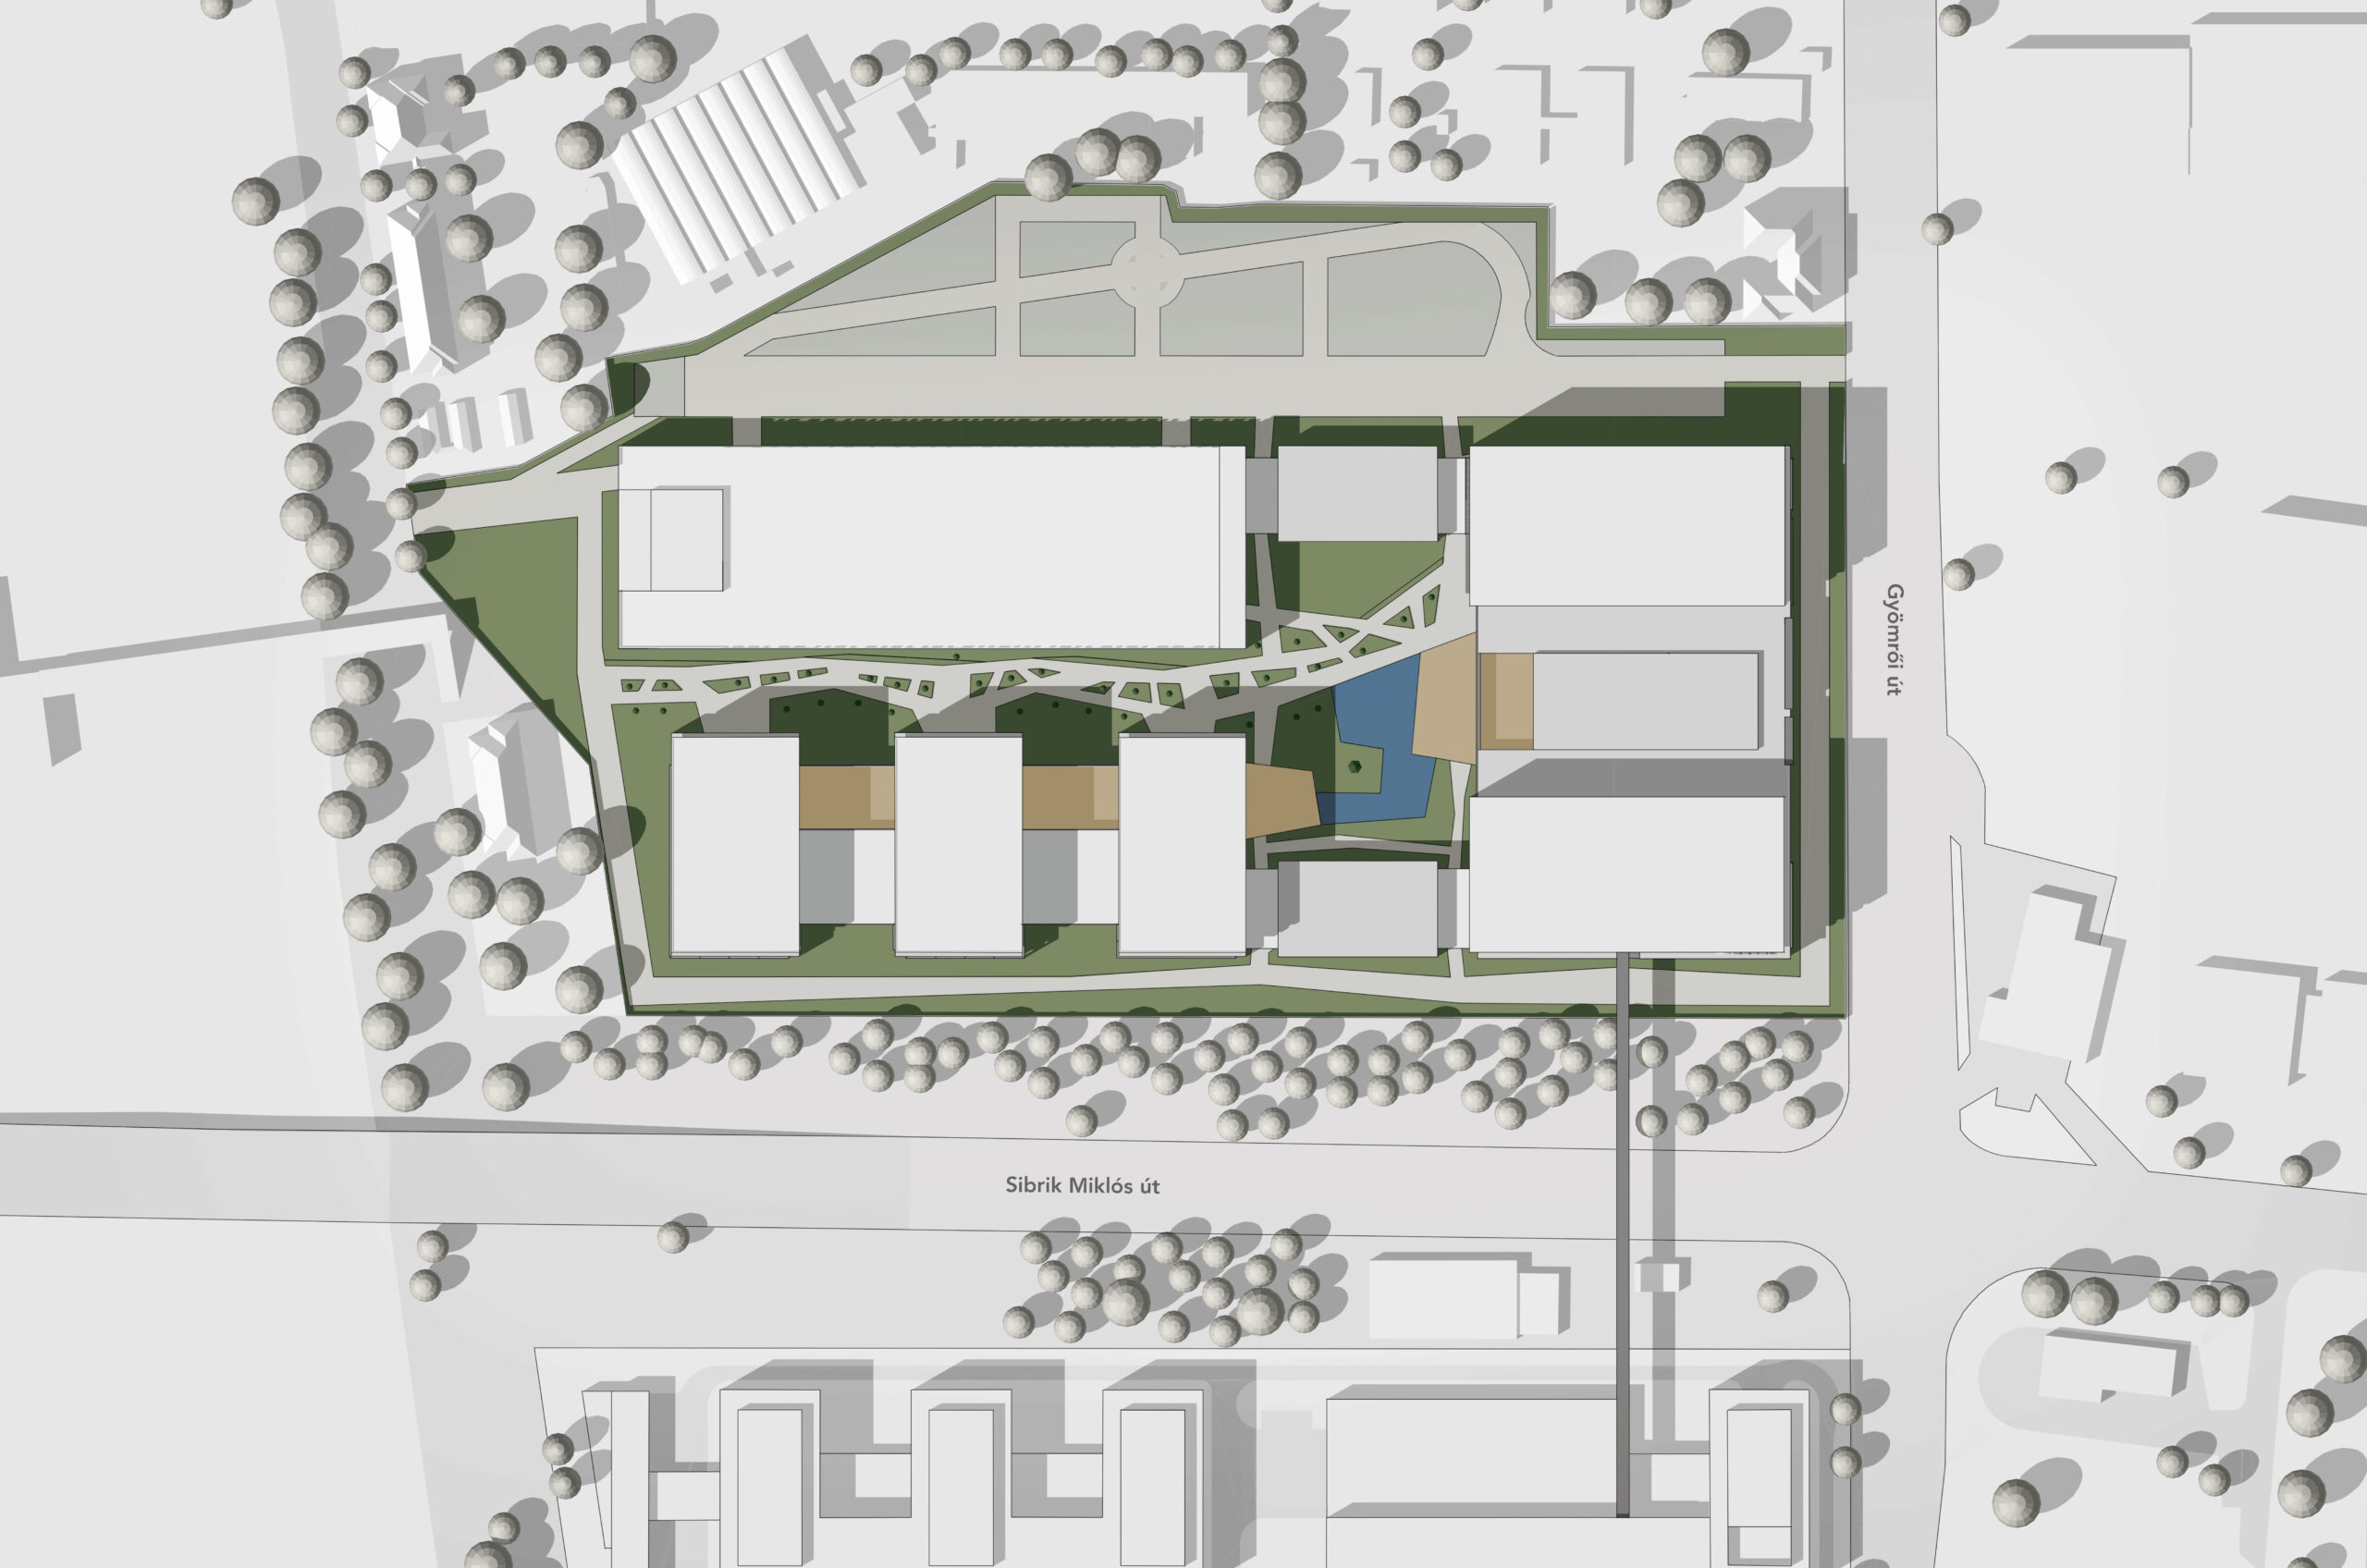 Bosch Budapest Campus II, concept plan, site plan